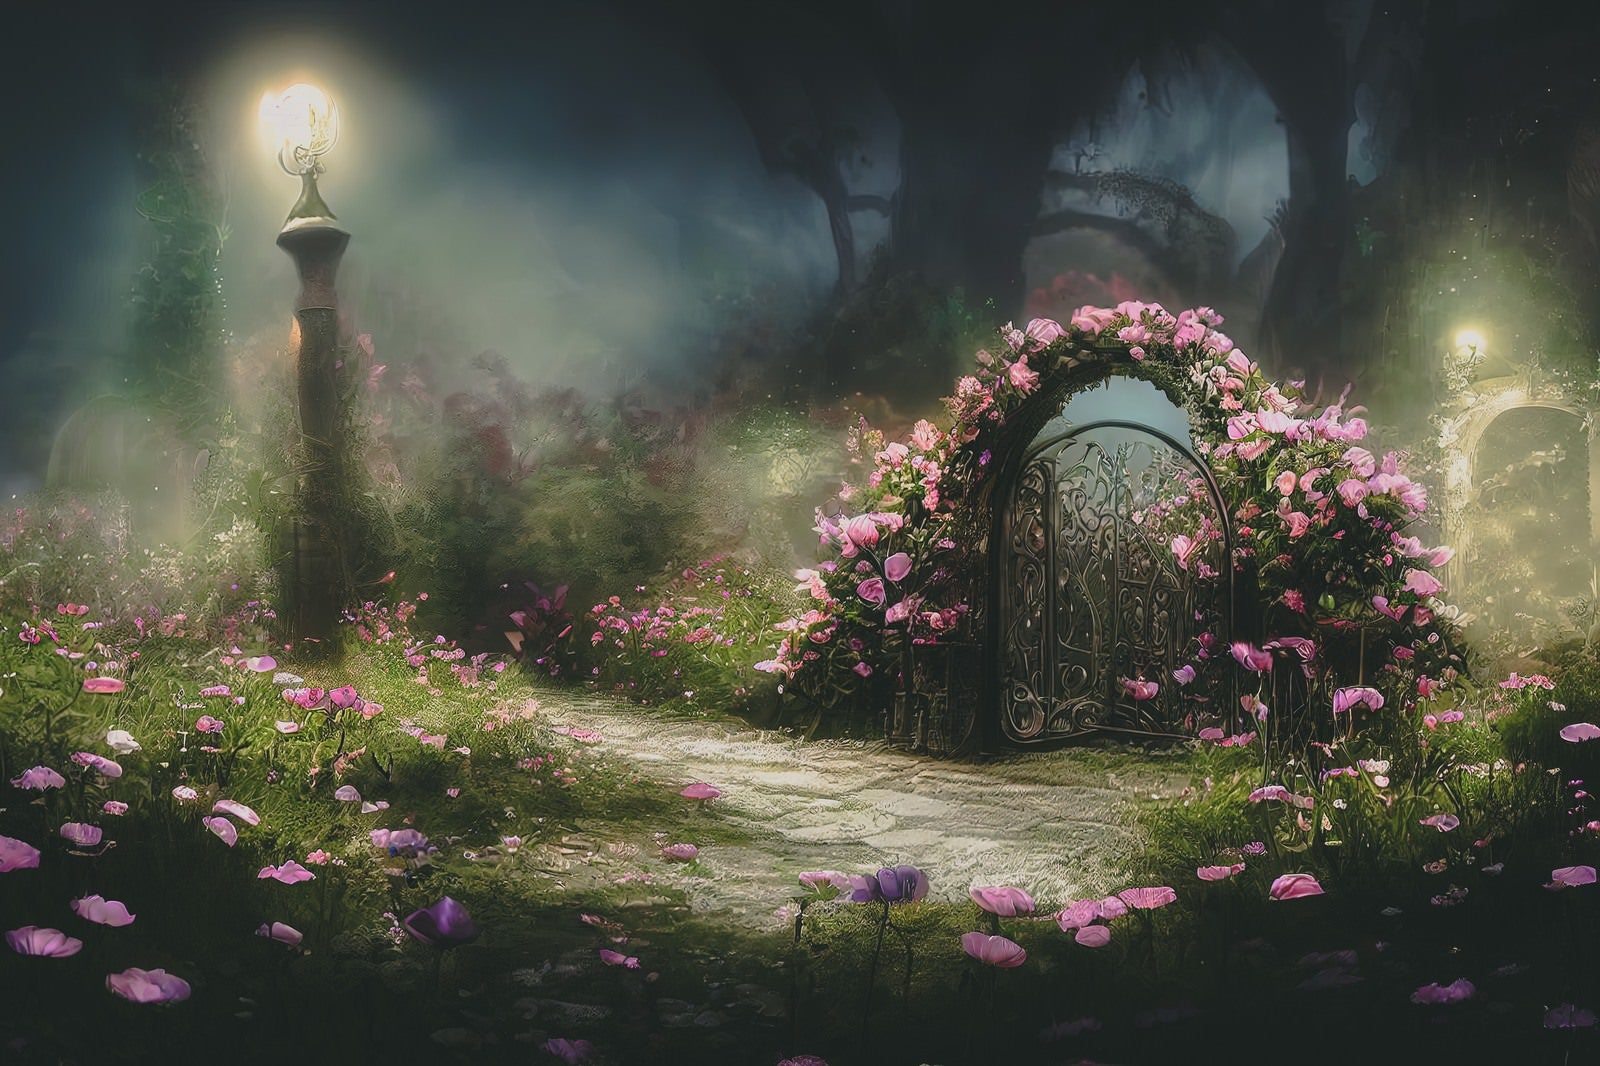 「街灯に照らされる妖精の門」の写真